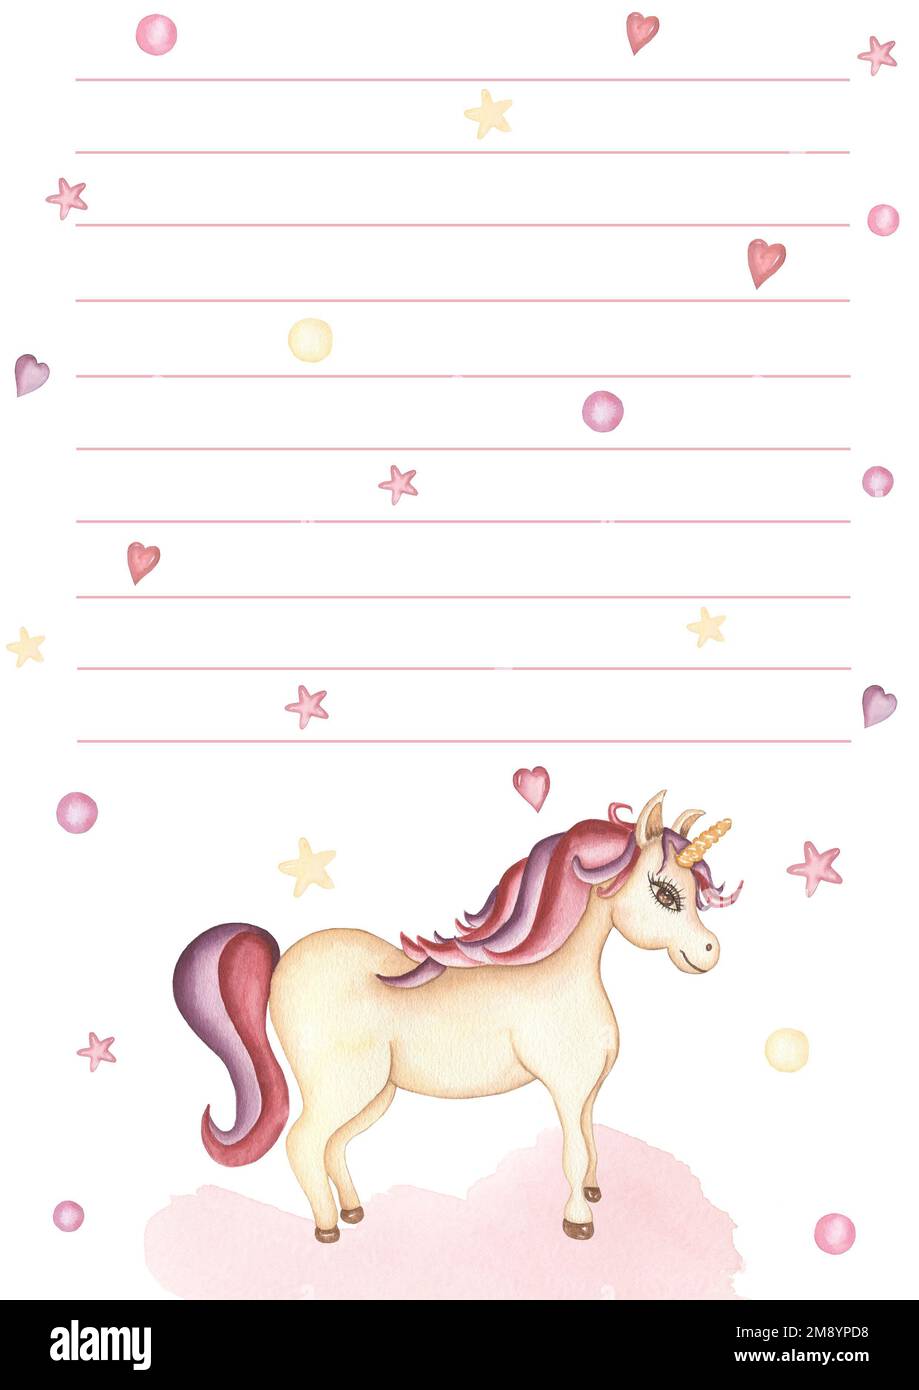 Acquerello disegnato a mano adorabile pianificatore quotidiano con unicorno carino. La mia lista di cose da fare con cuori, stelle, puntini di polka e illustrazioni di animali da pony. Note Foto Stock